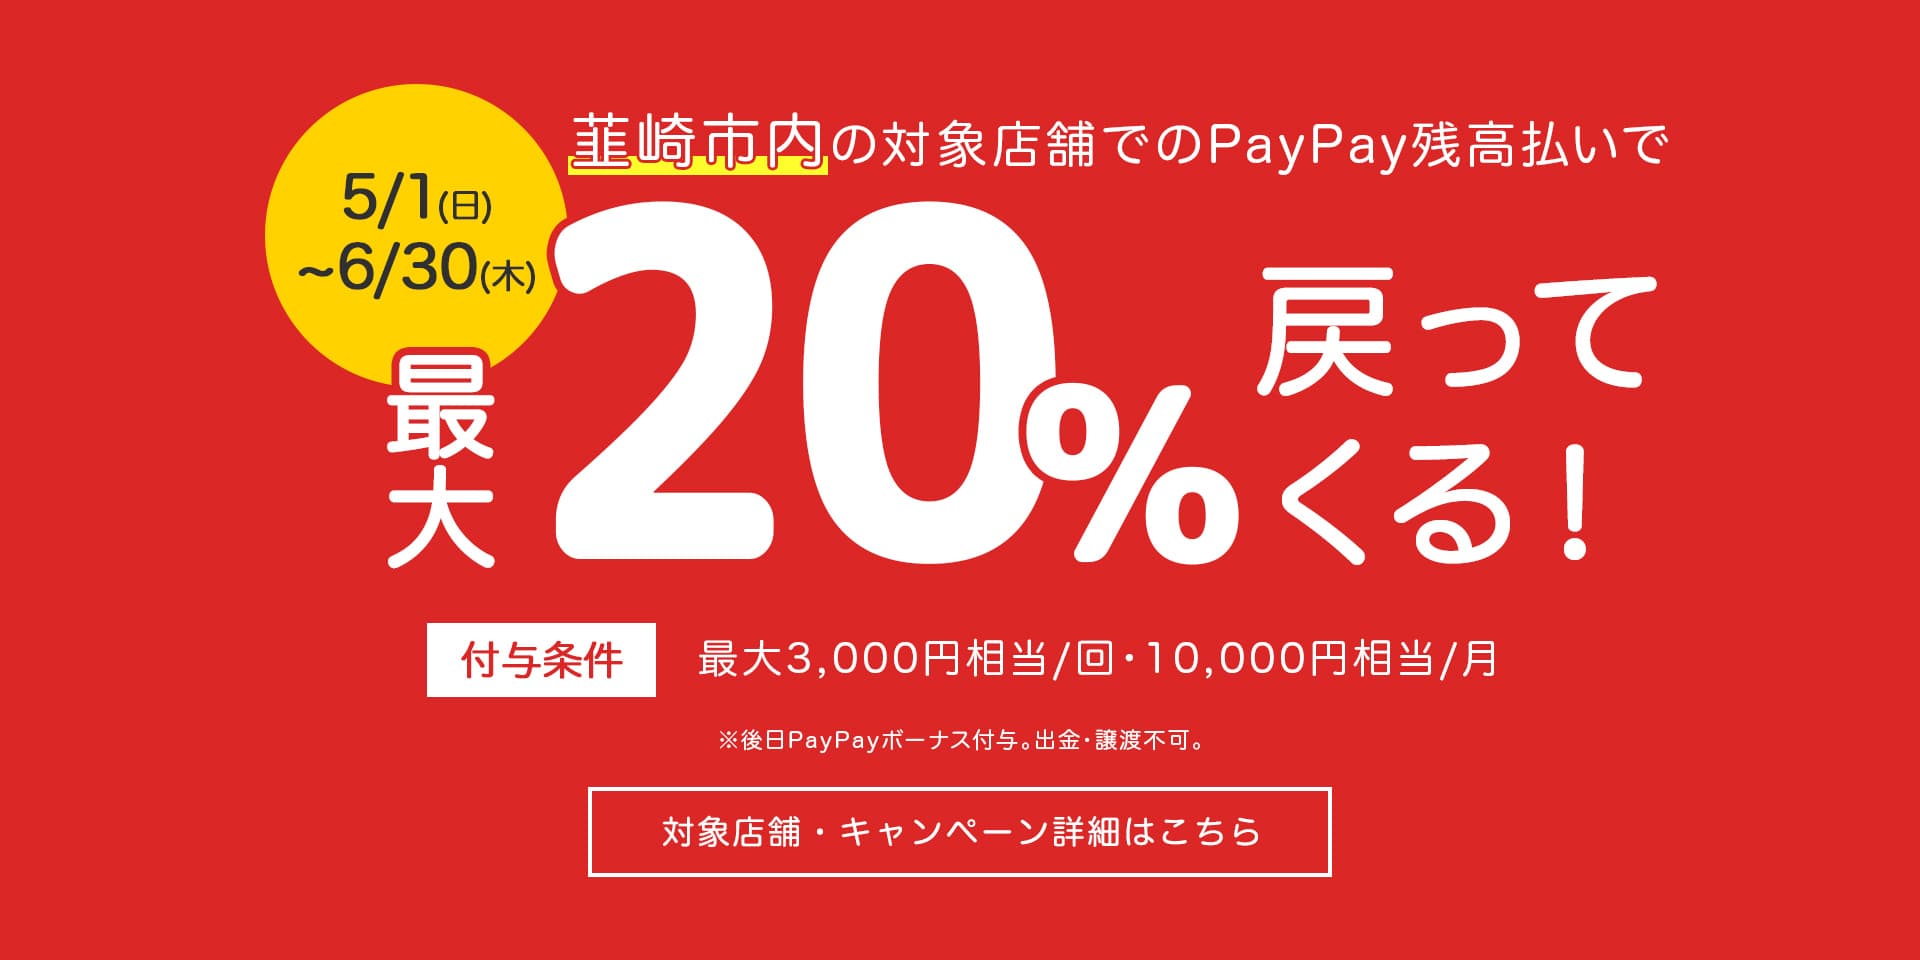 韮崎市 PayPay最大20%還元キャンペーン